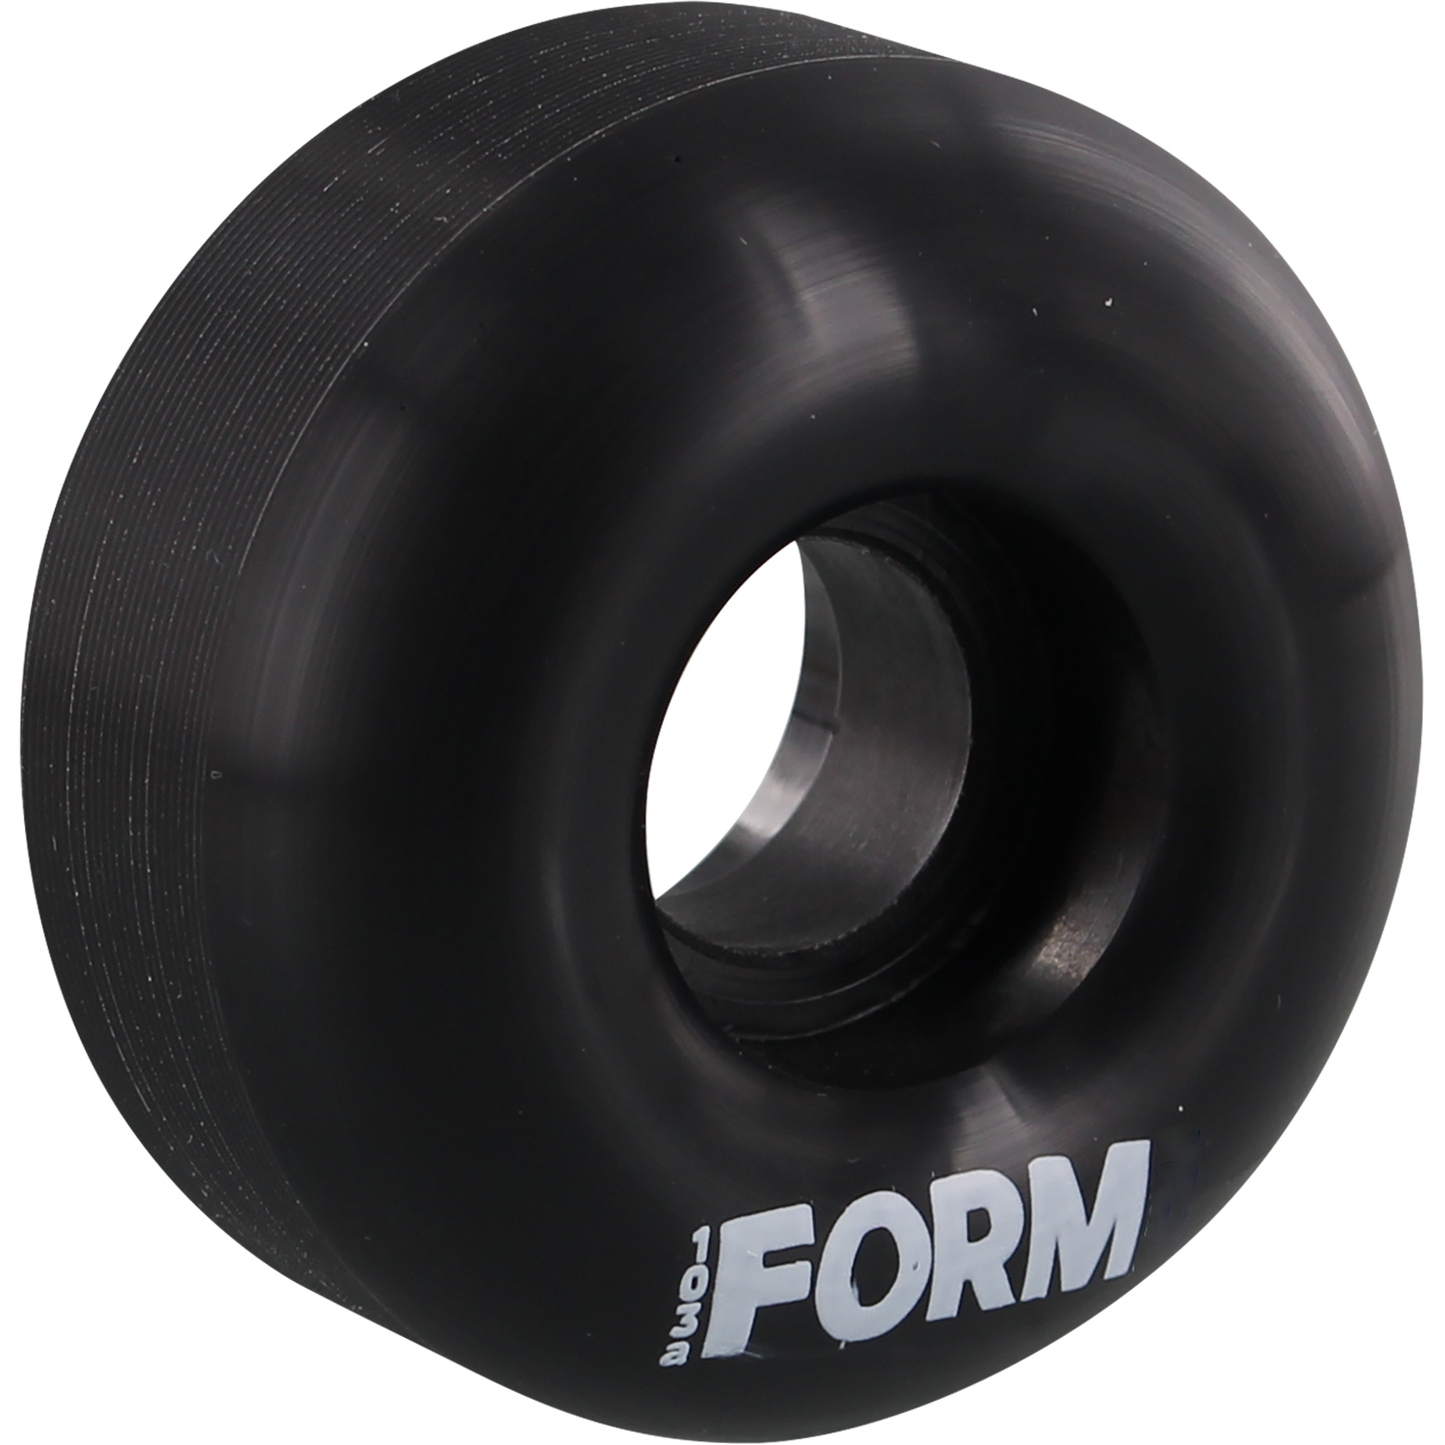 FORM Solid Skateboard Wheels (Set of 4)